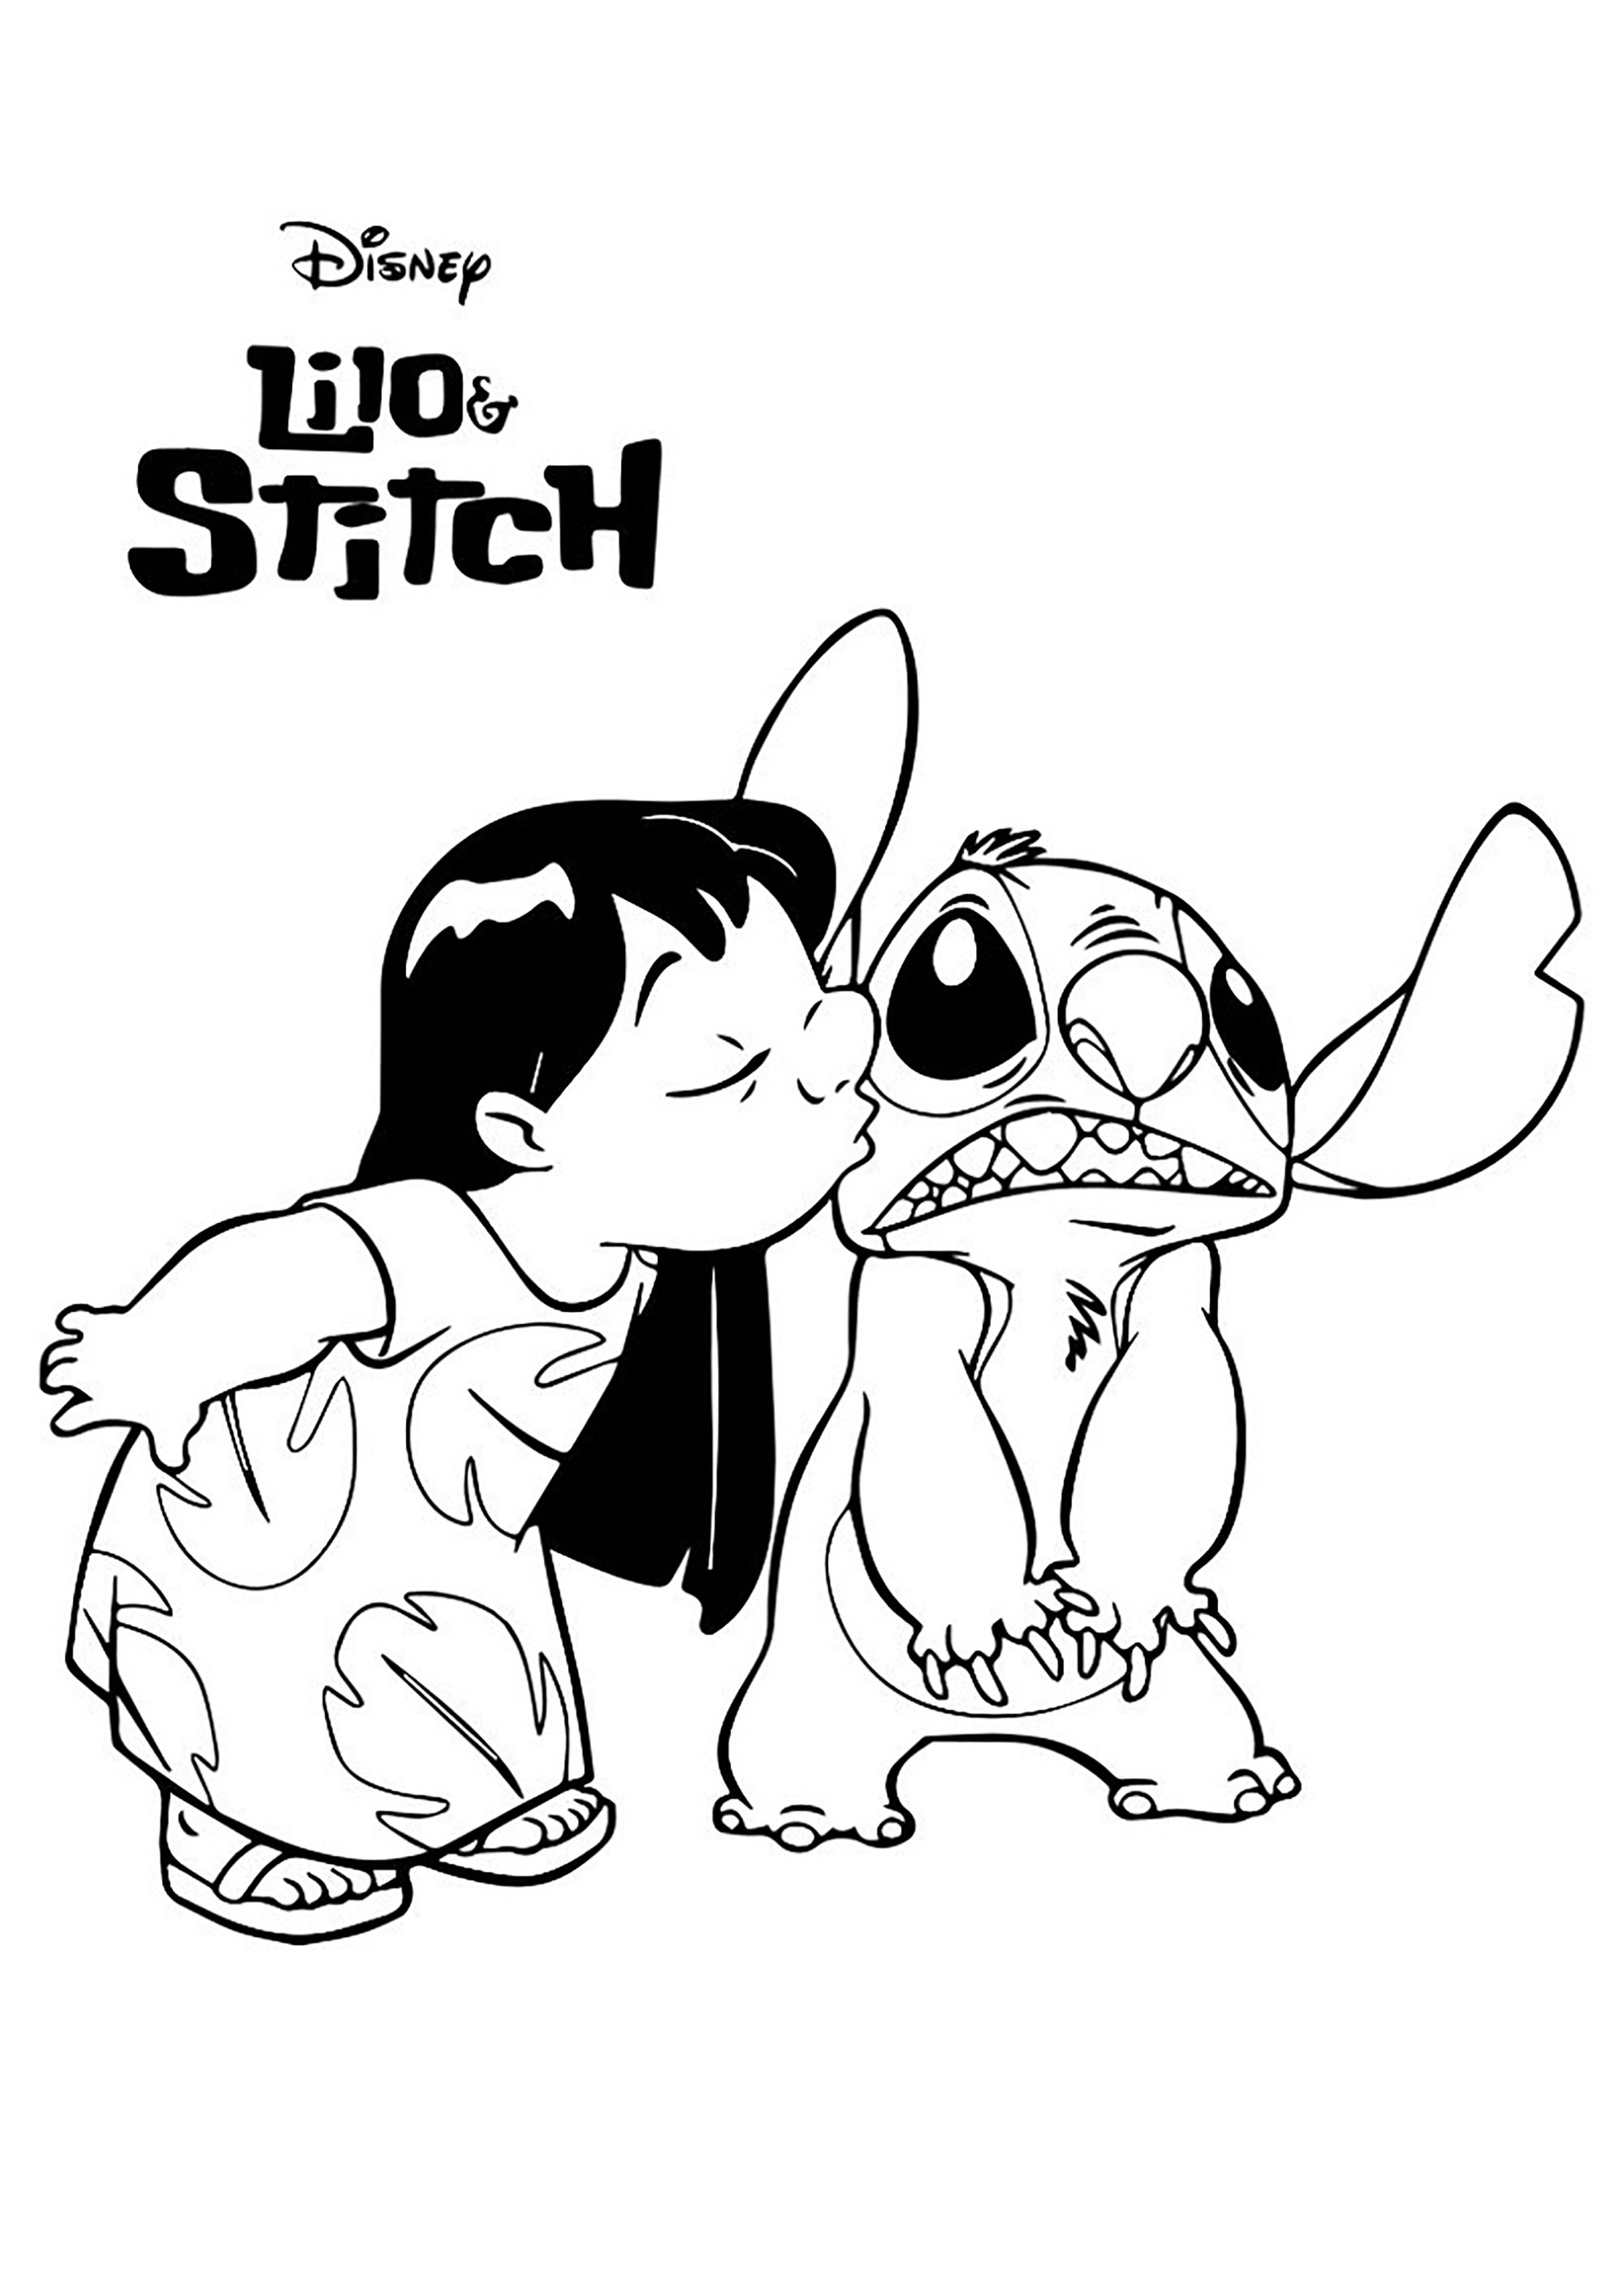 Páginas para colorir de Lilo e Stitch para descarregar - Lilo e Stitch -  Just Color Crianças : Páginas para colorir para crianças